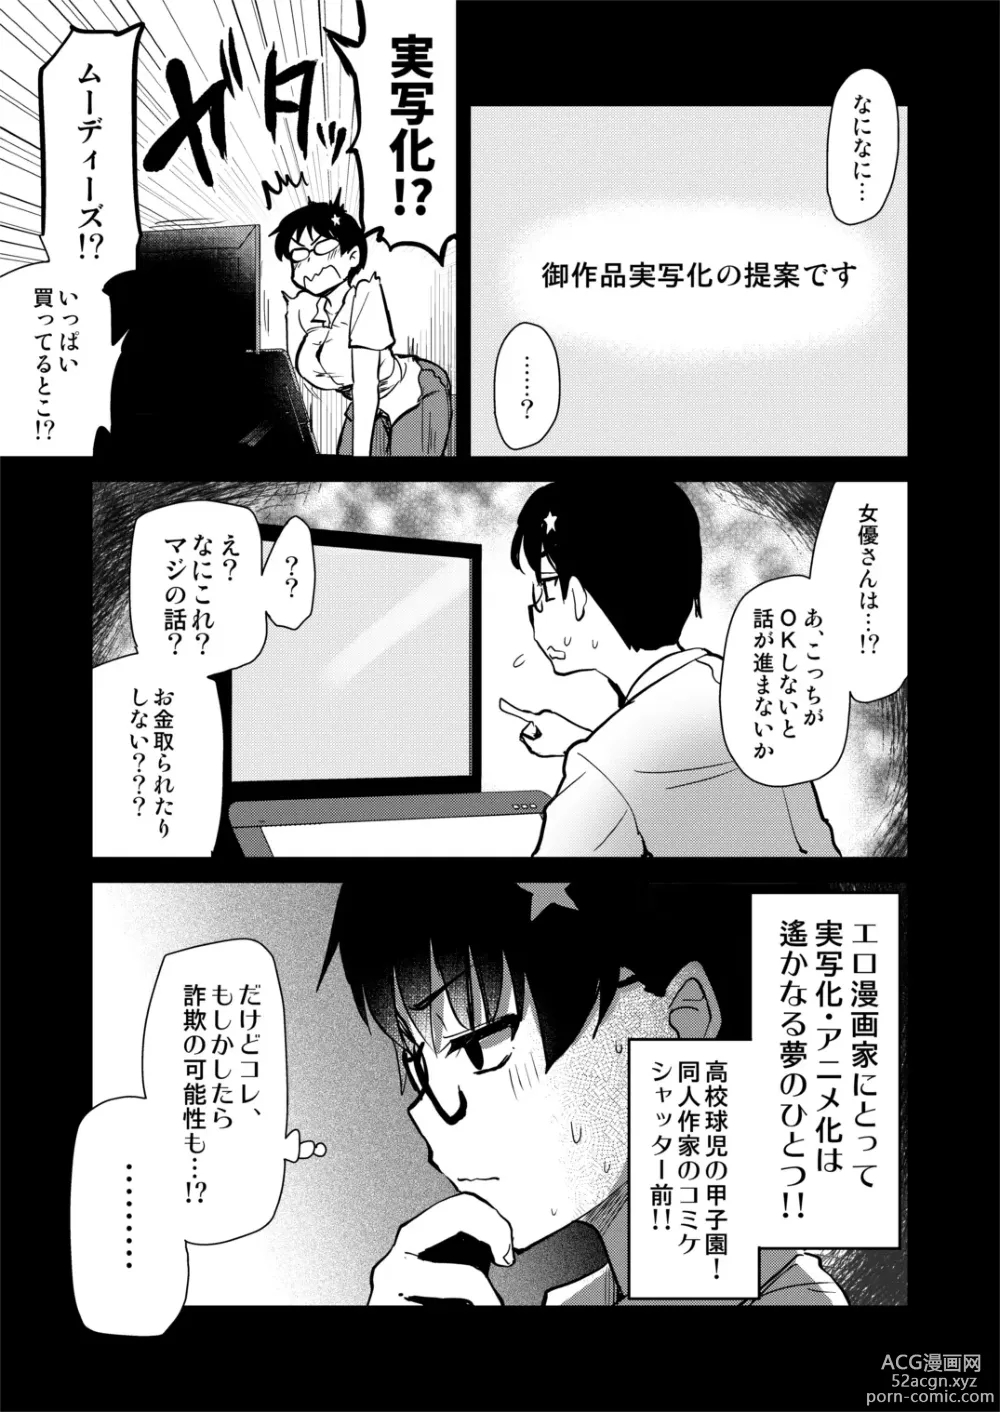 Page 6 of doujinshi Jibun no Kaita Manga ga Jissha AV ni!? Sekkaku nano de Satsuei Genba no Kengaku ni Ittekimashita.